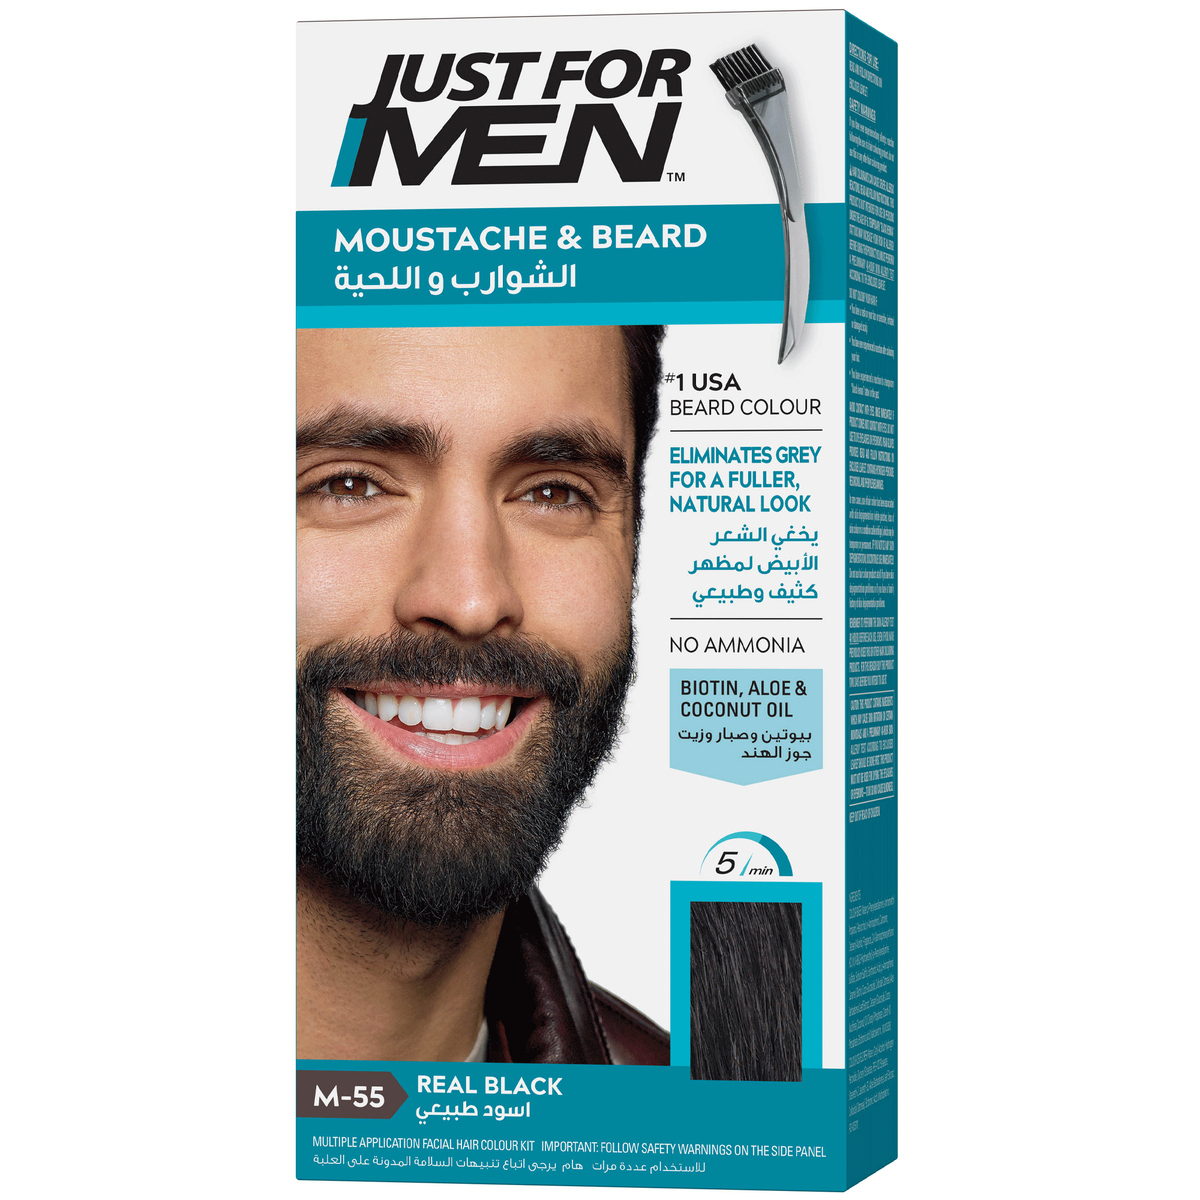 Just For Men Moustache & Beard M-55 Real Black 1 pkt